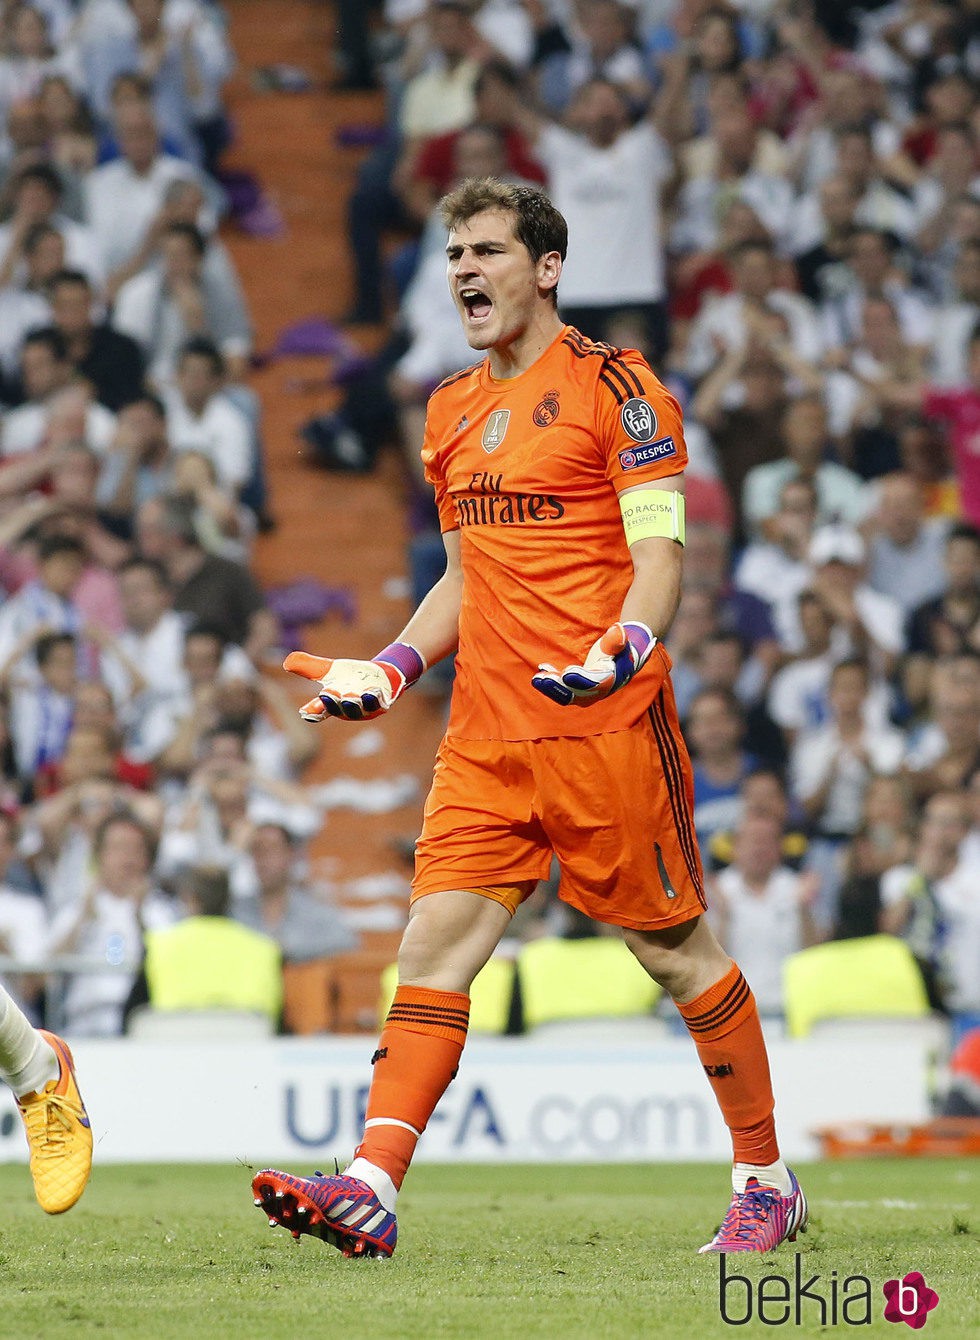 Iker Casillas en el partido de semifinal de la Champions en el Santiago Bernabéu